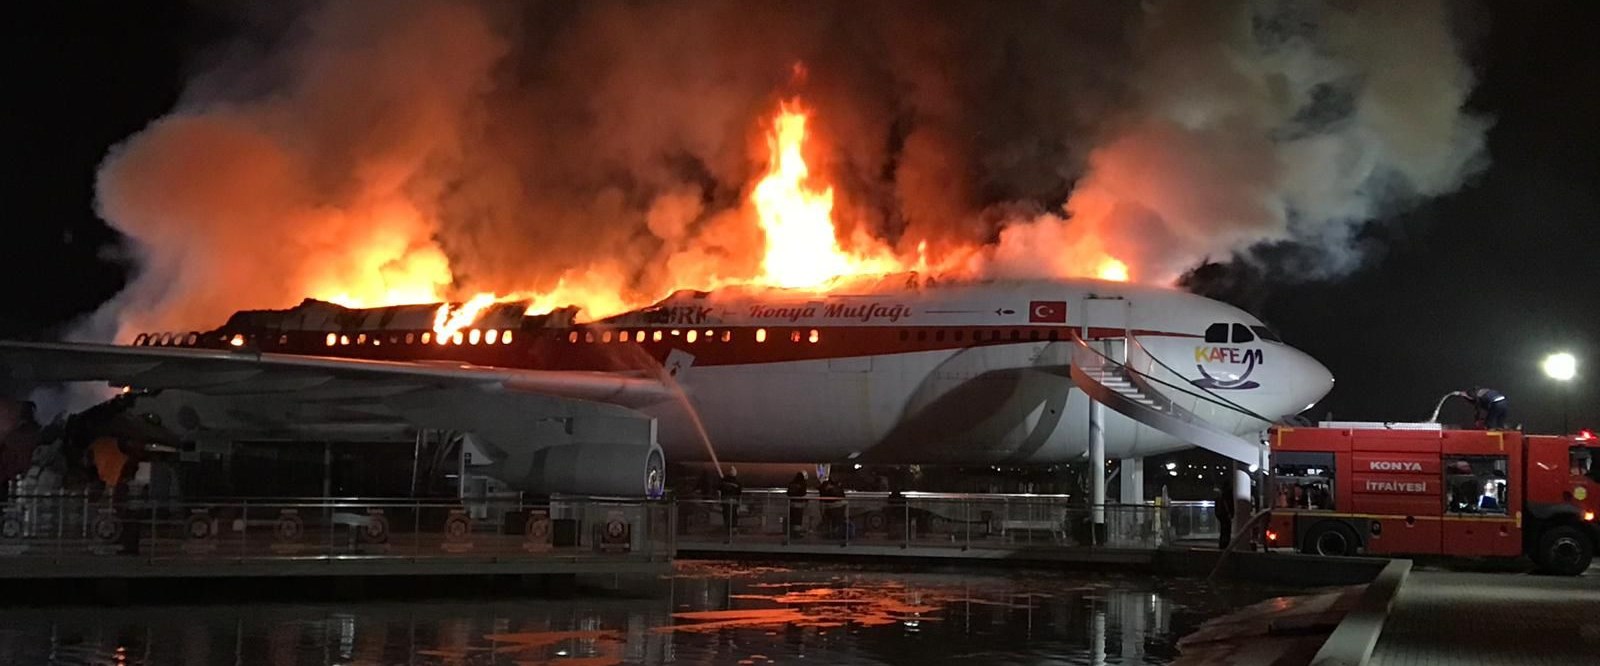 Konya’da uçak restoran- kafede yangın